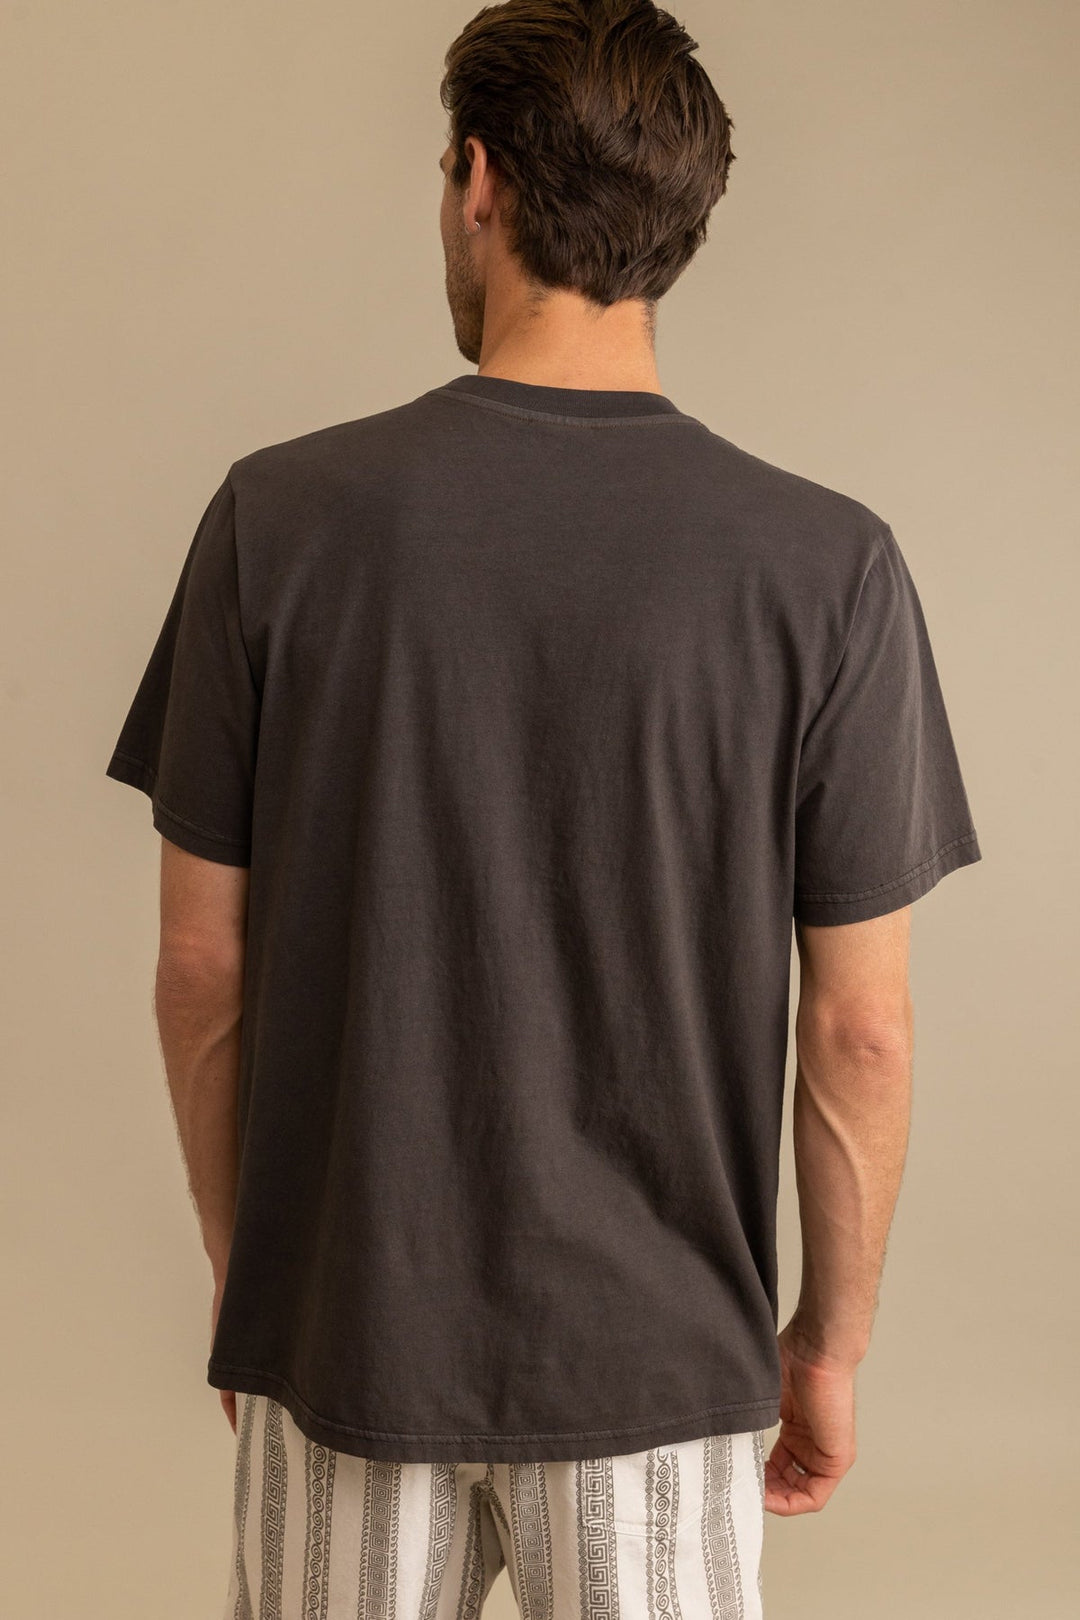 Three Suns Vintage Short Sleeve T-Shirt - Vintage Black